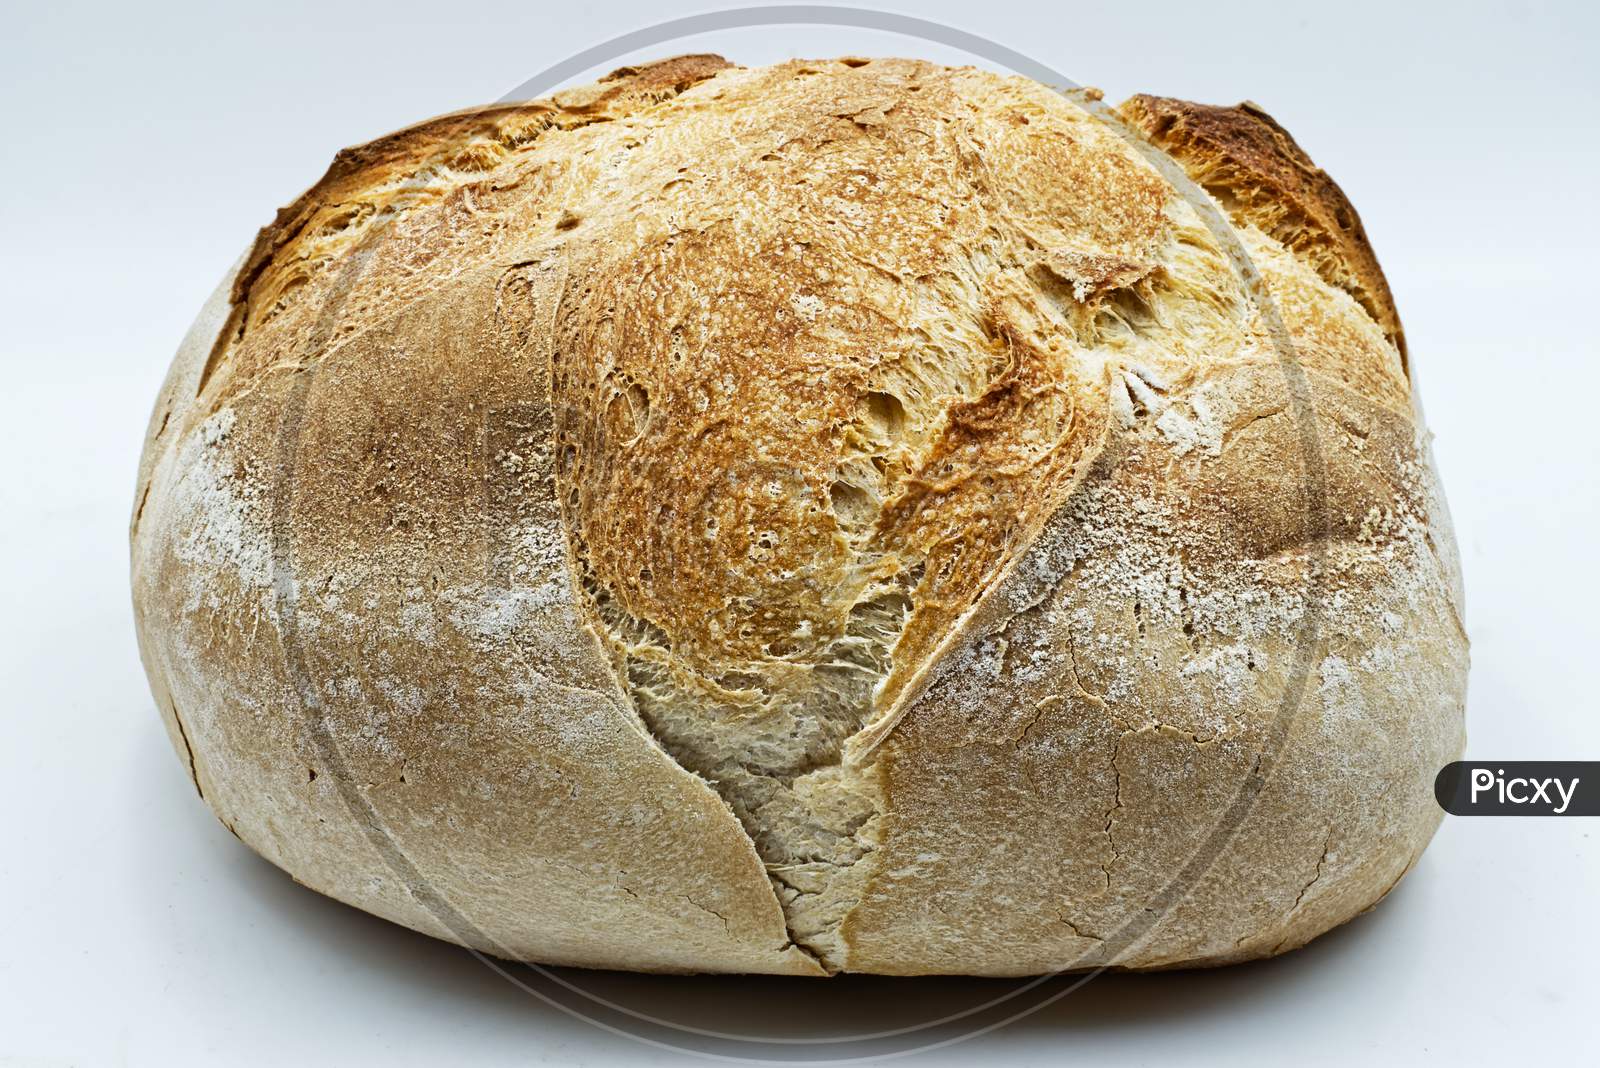 Traditional Altamura italian bread